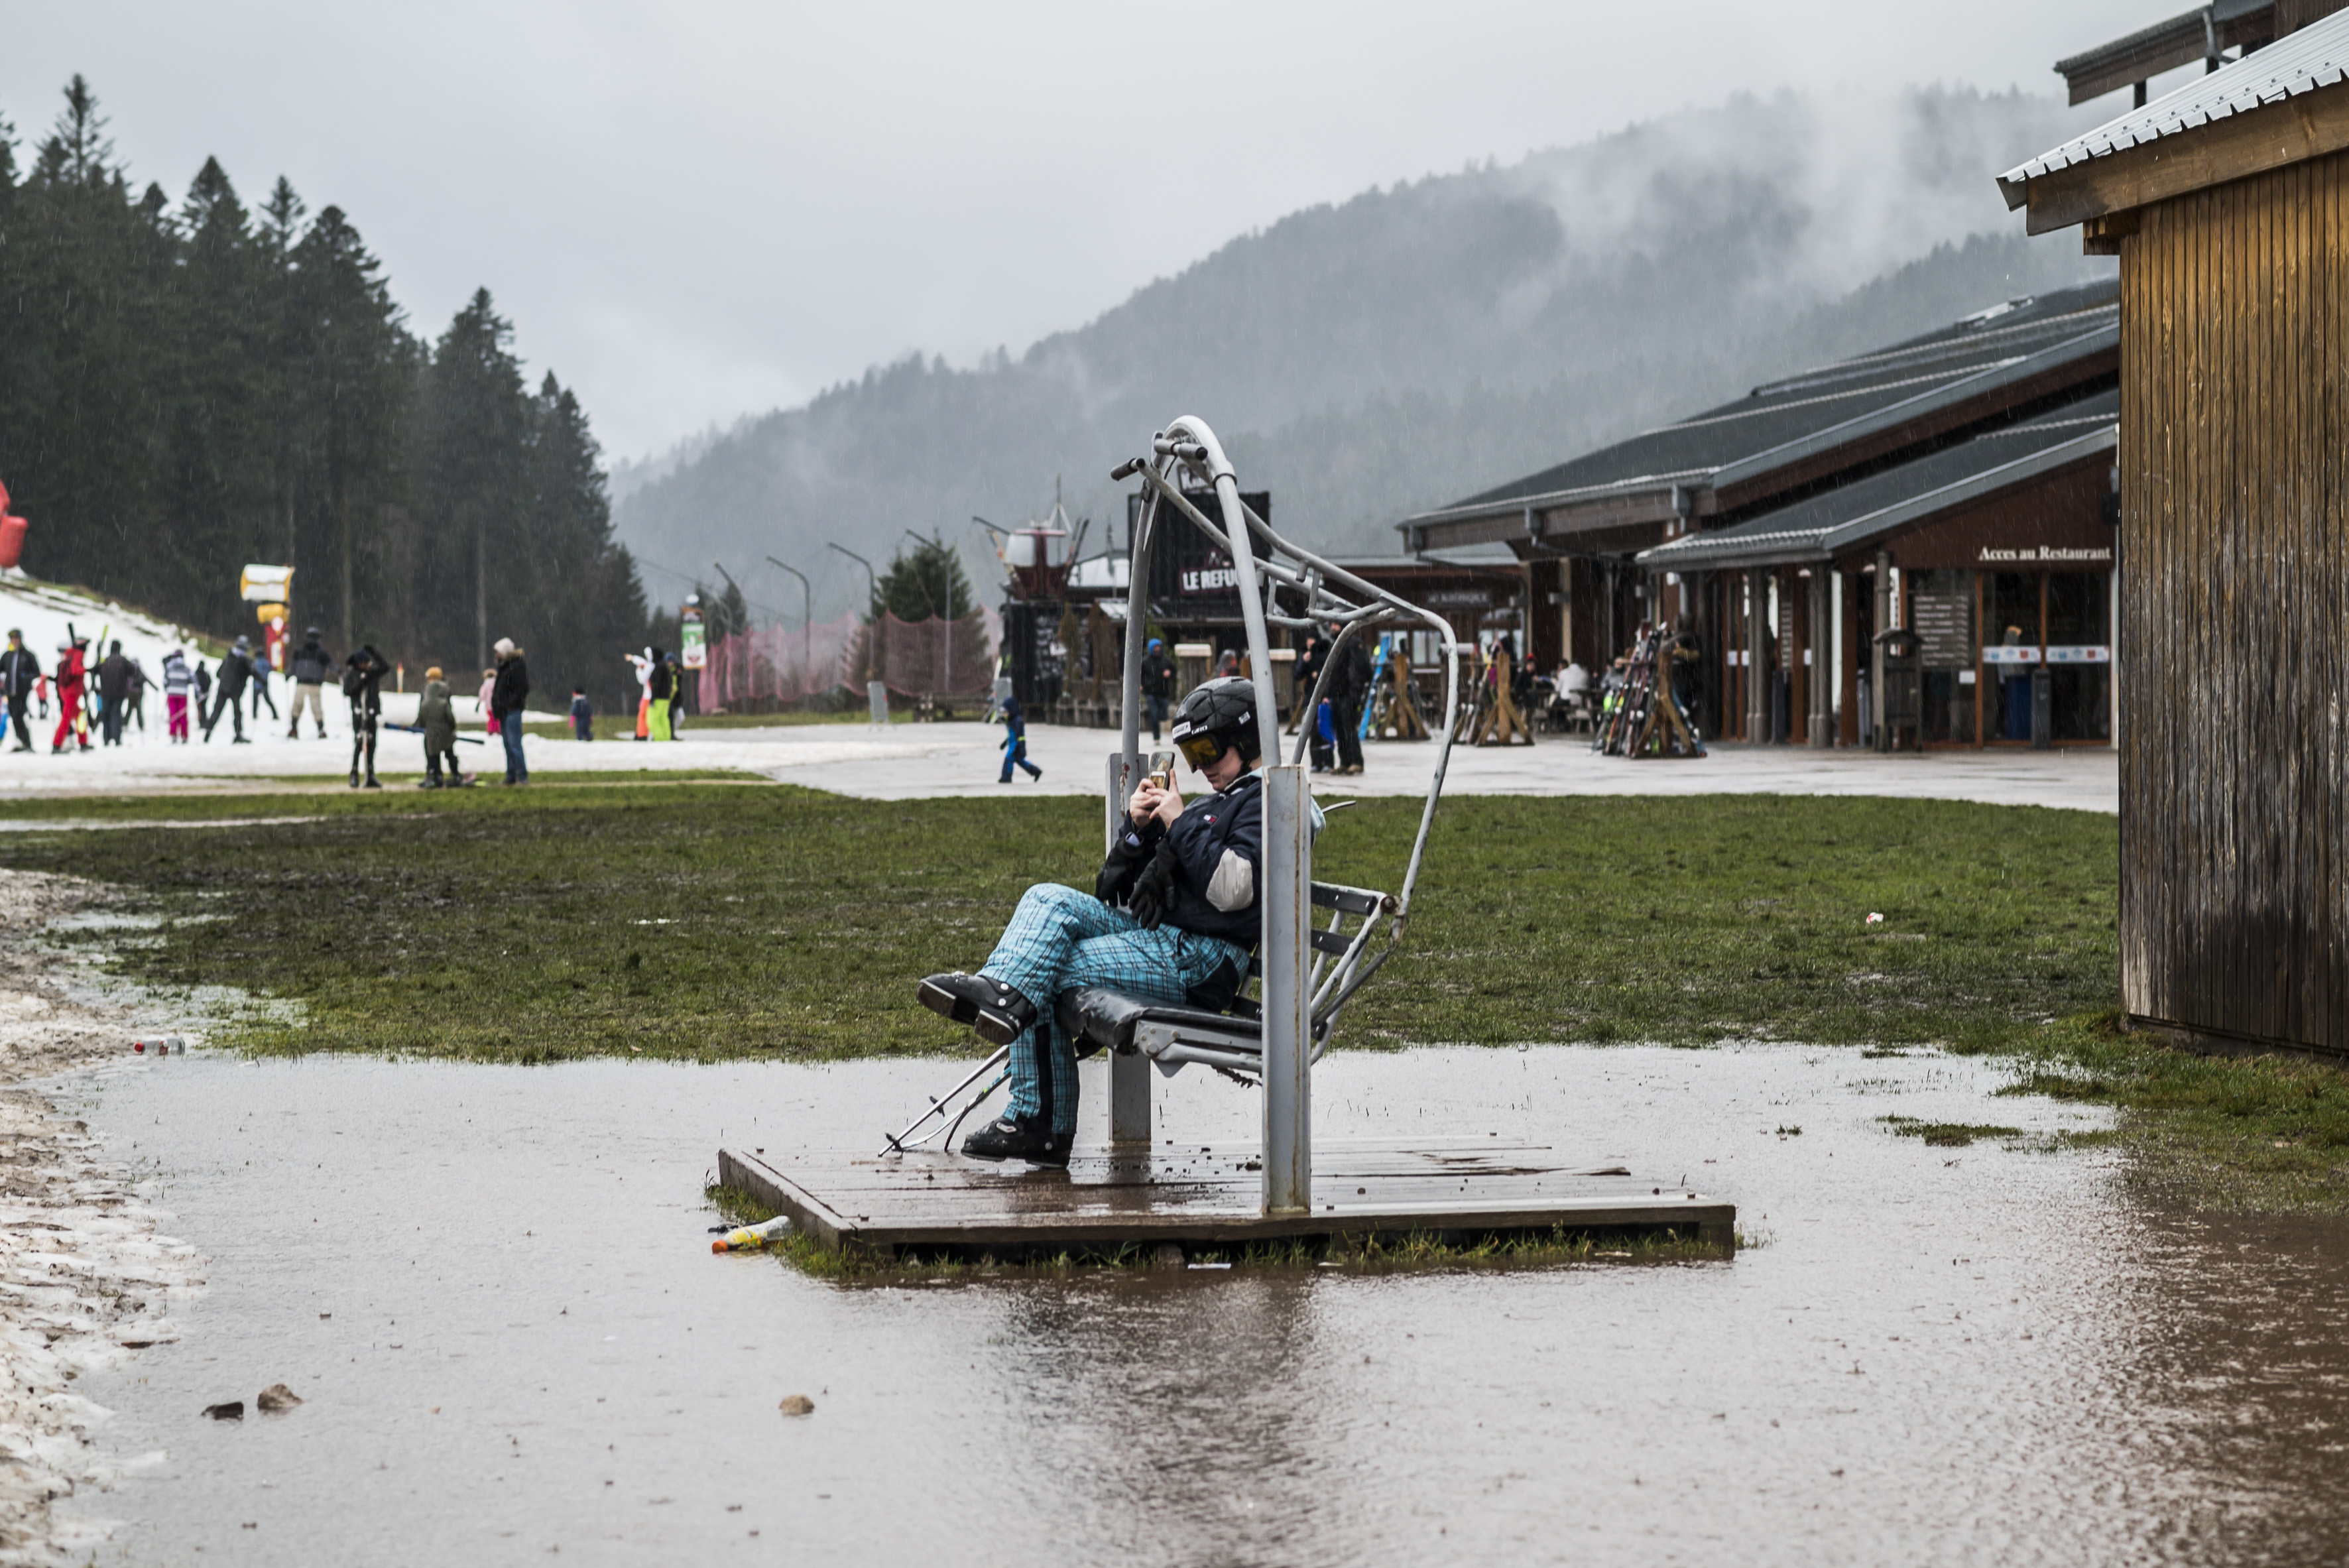 La Bresse : la saison d'hiver en préparation à la station de ski miniature  « Les 3 Glaciers » - Remiremont Info